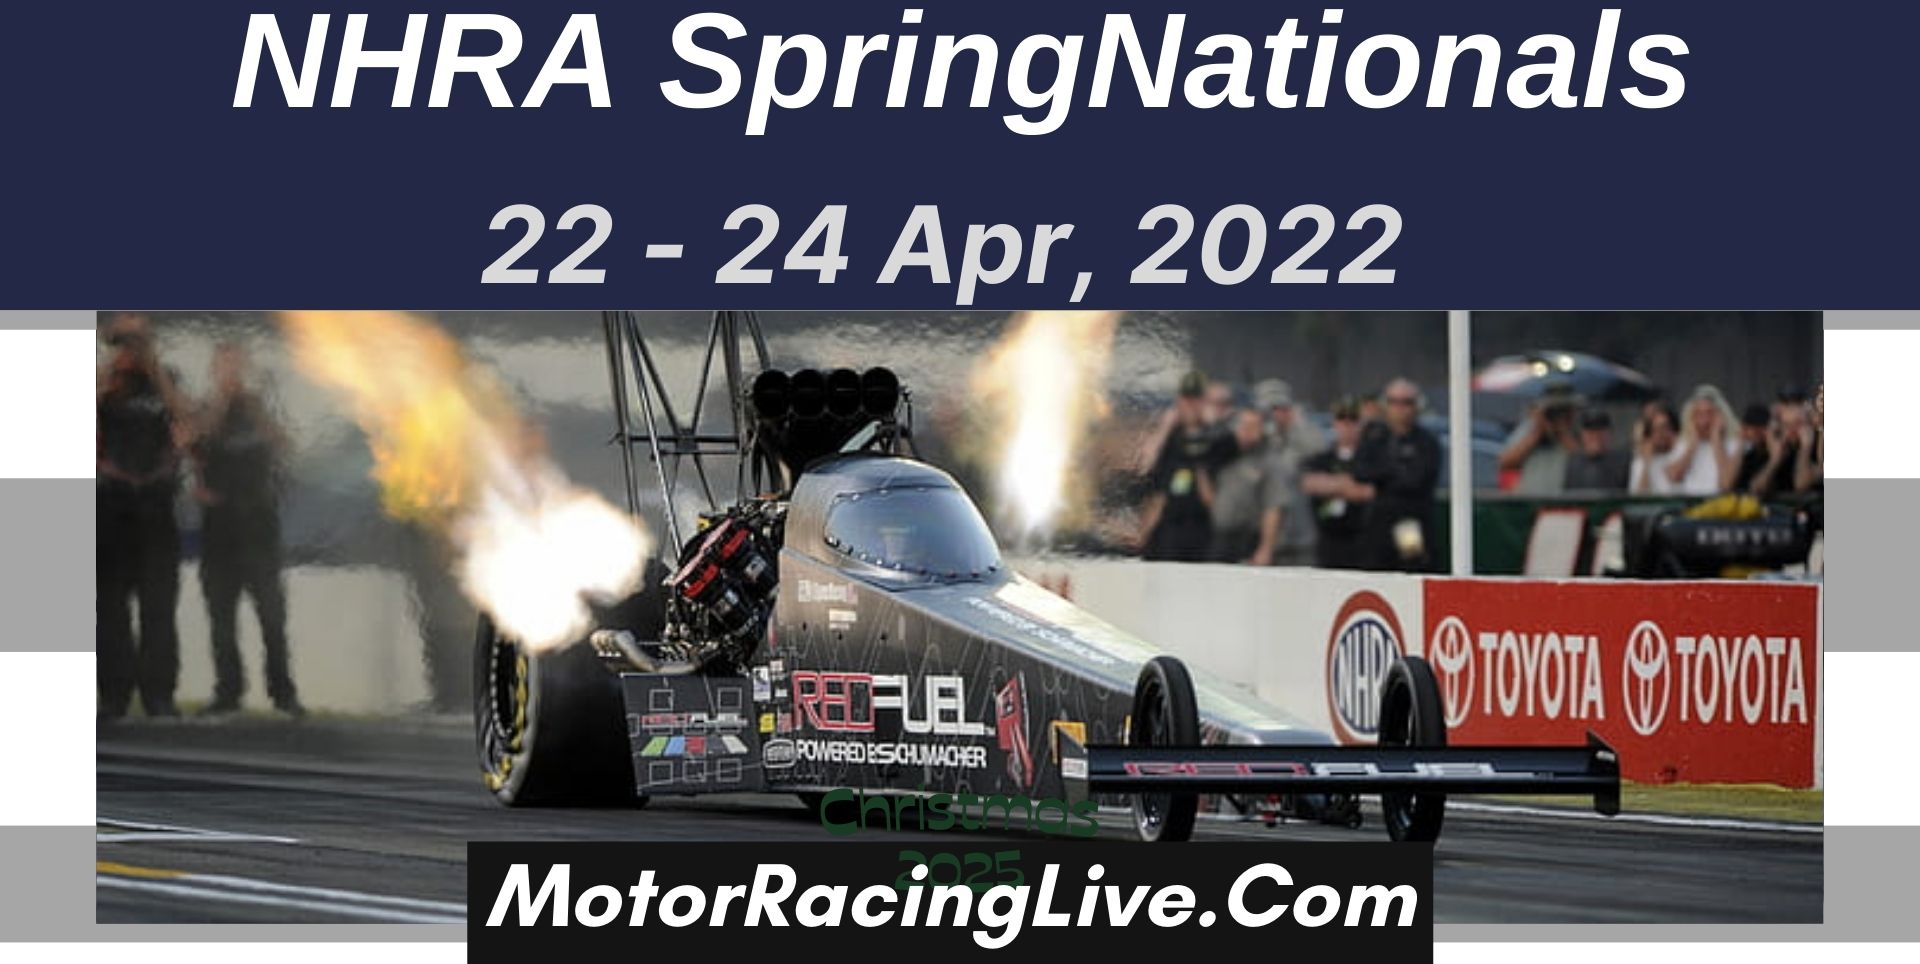 NHRA SpringNationals 2022 Live Stream